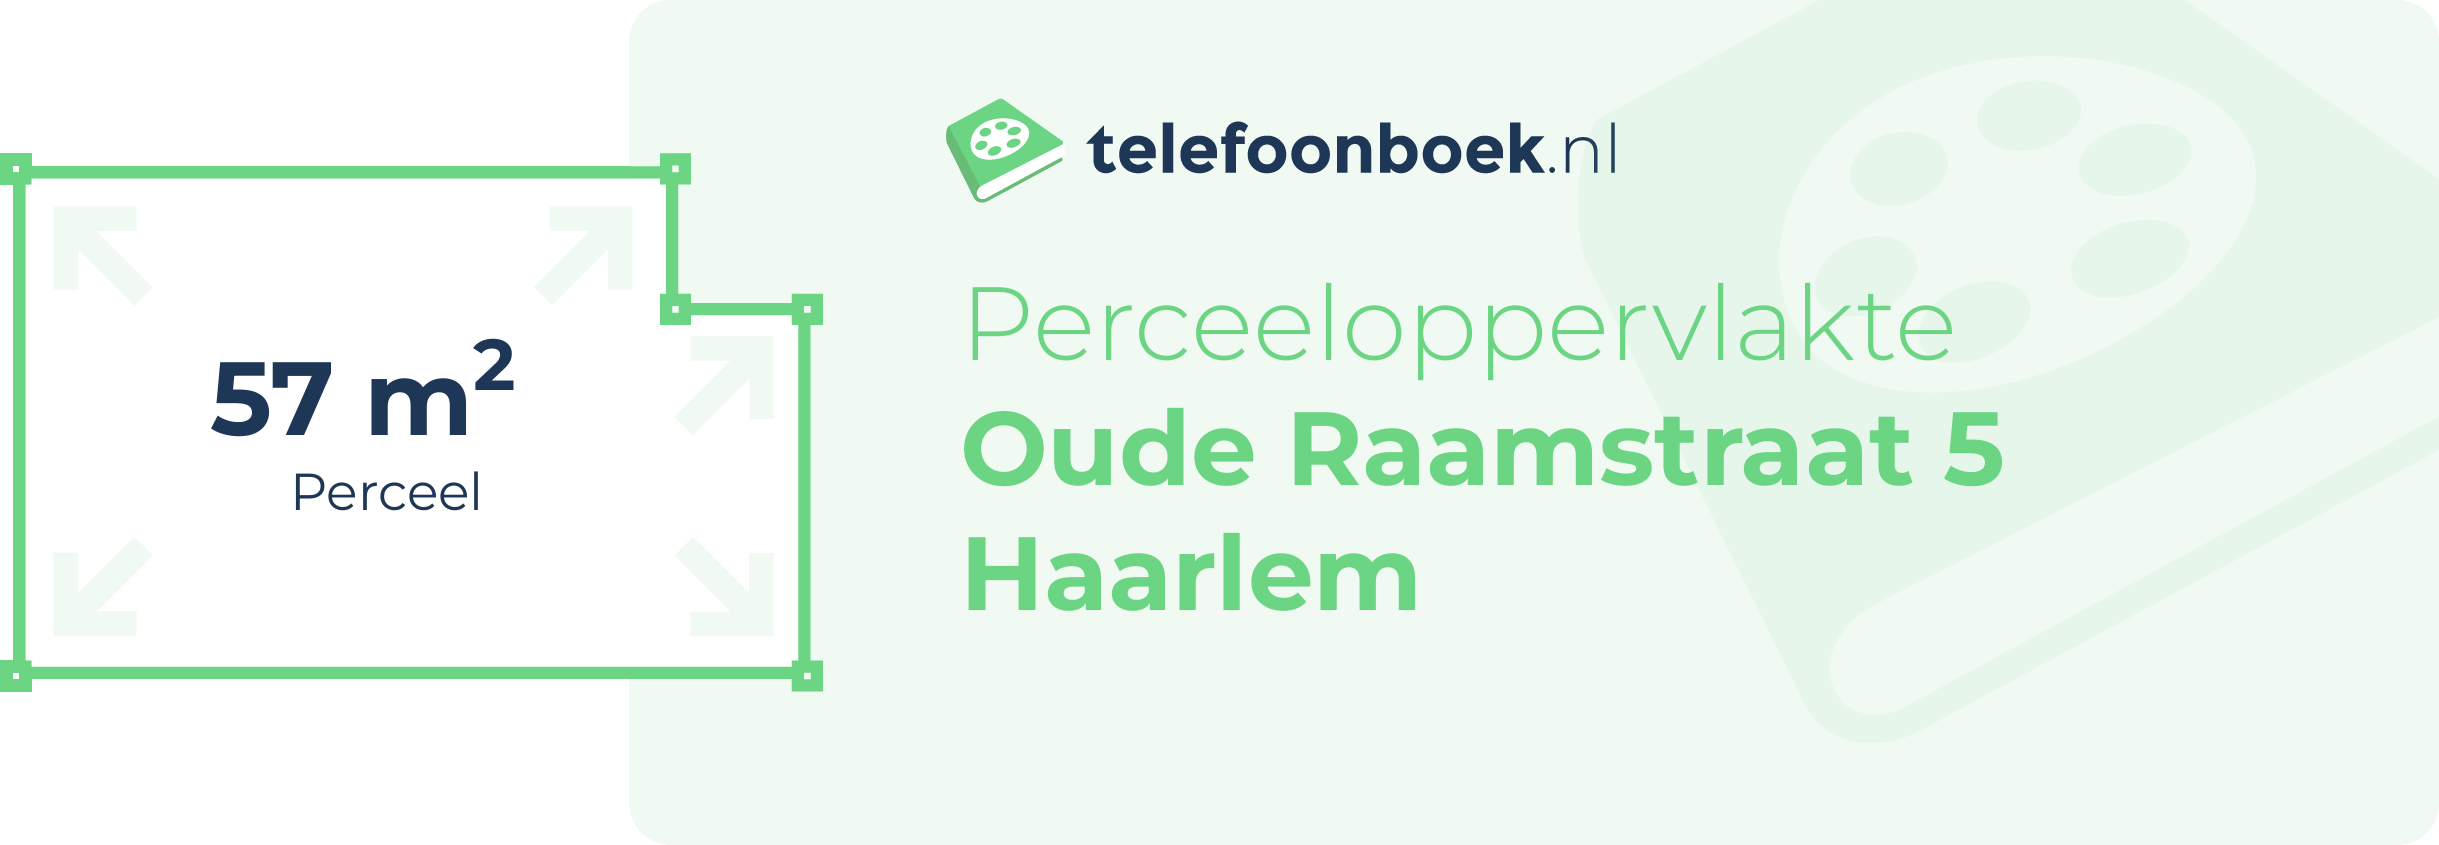 Perceeloppervlakte Oude Raamstraat 5 Haarlem